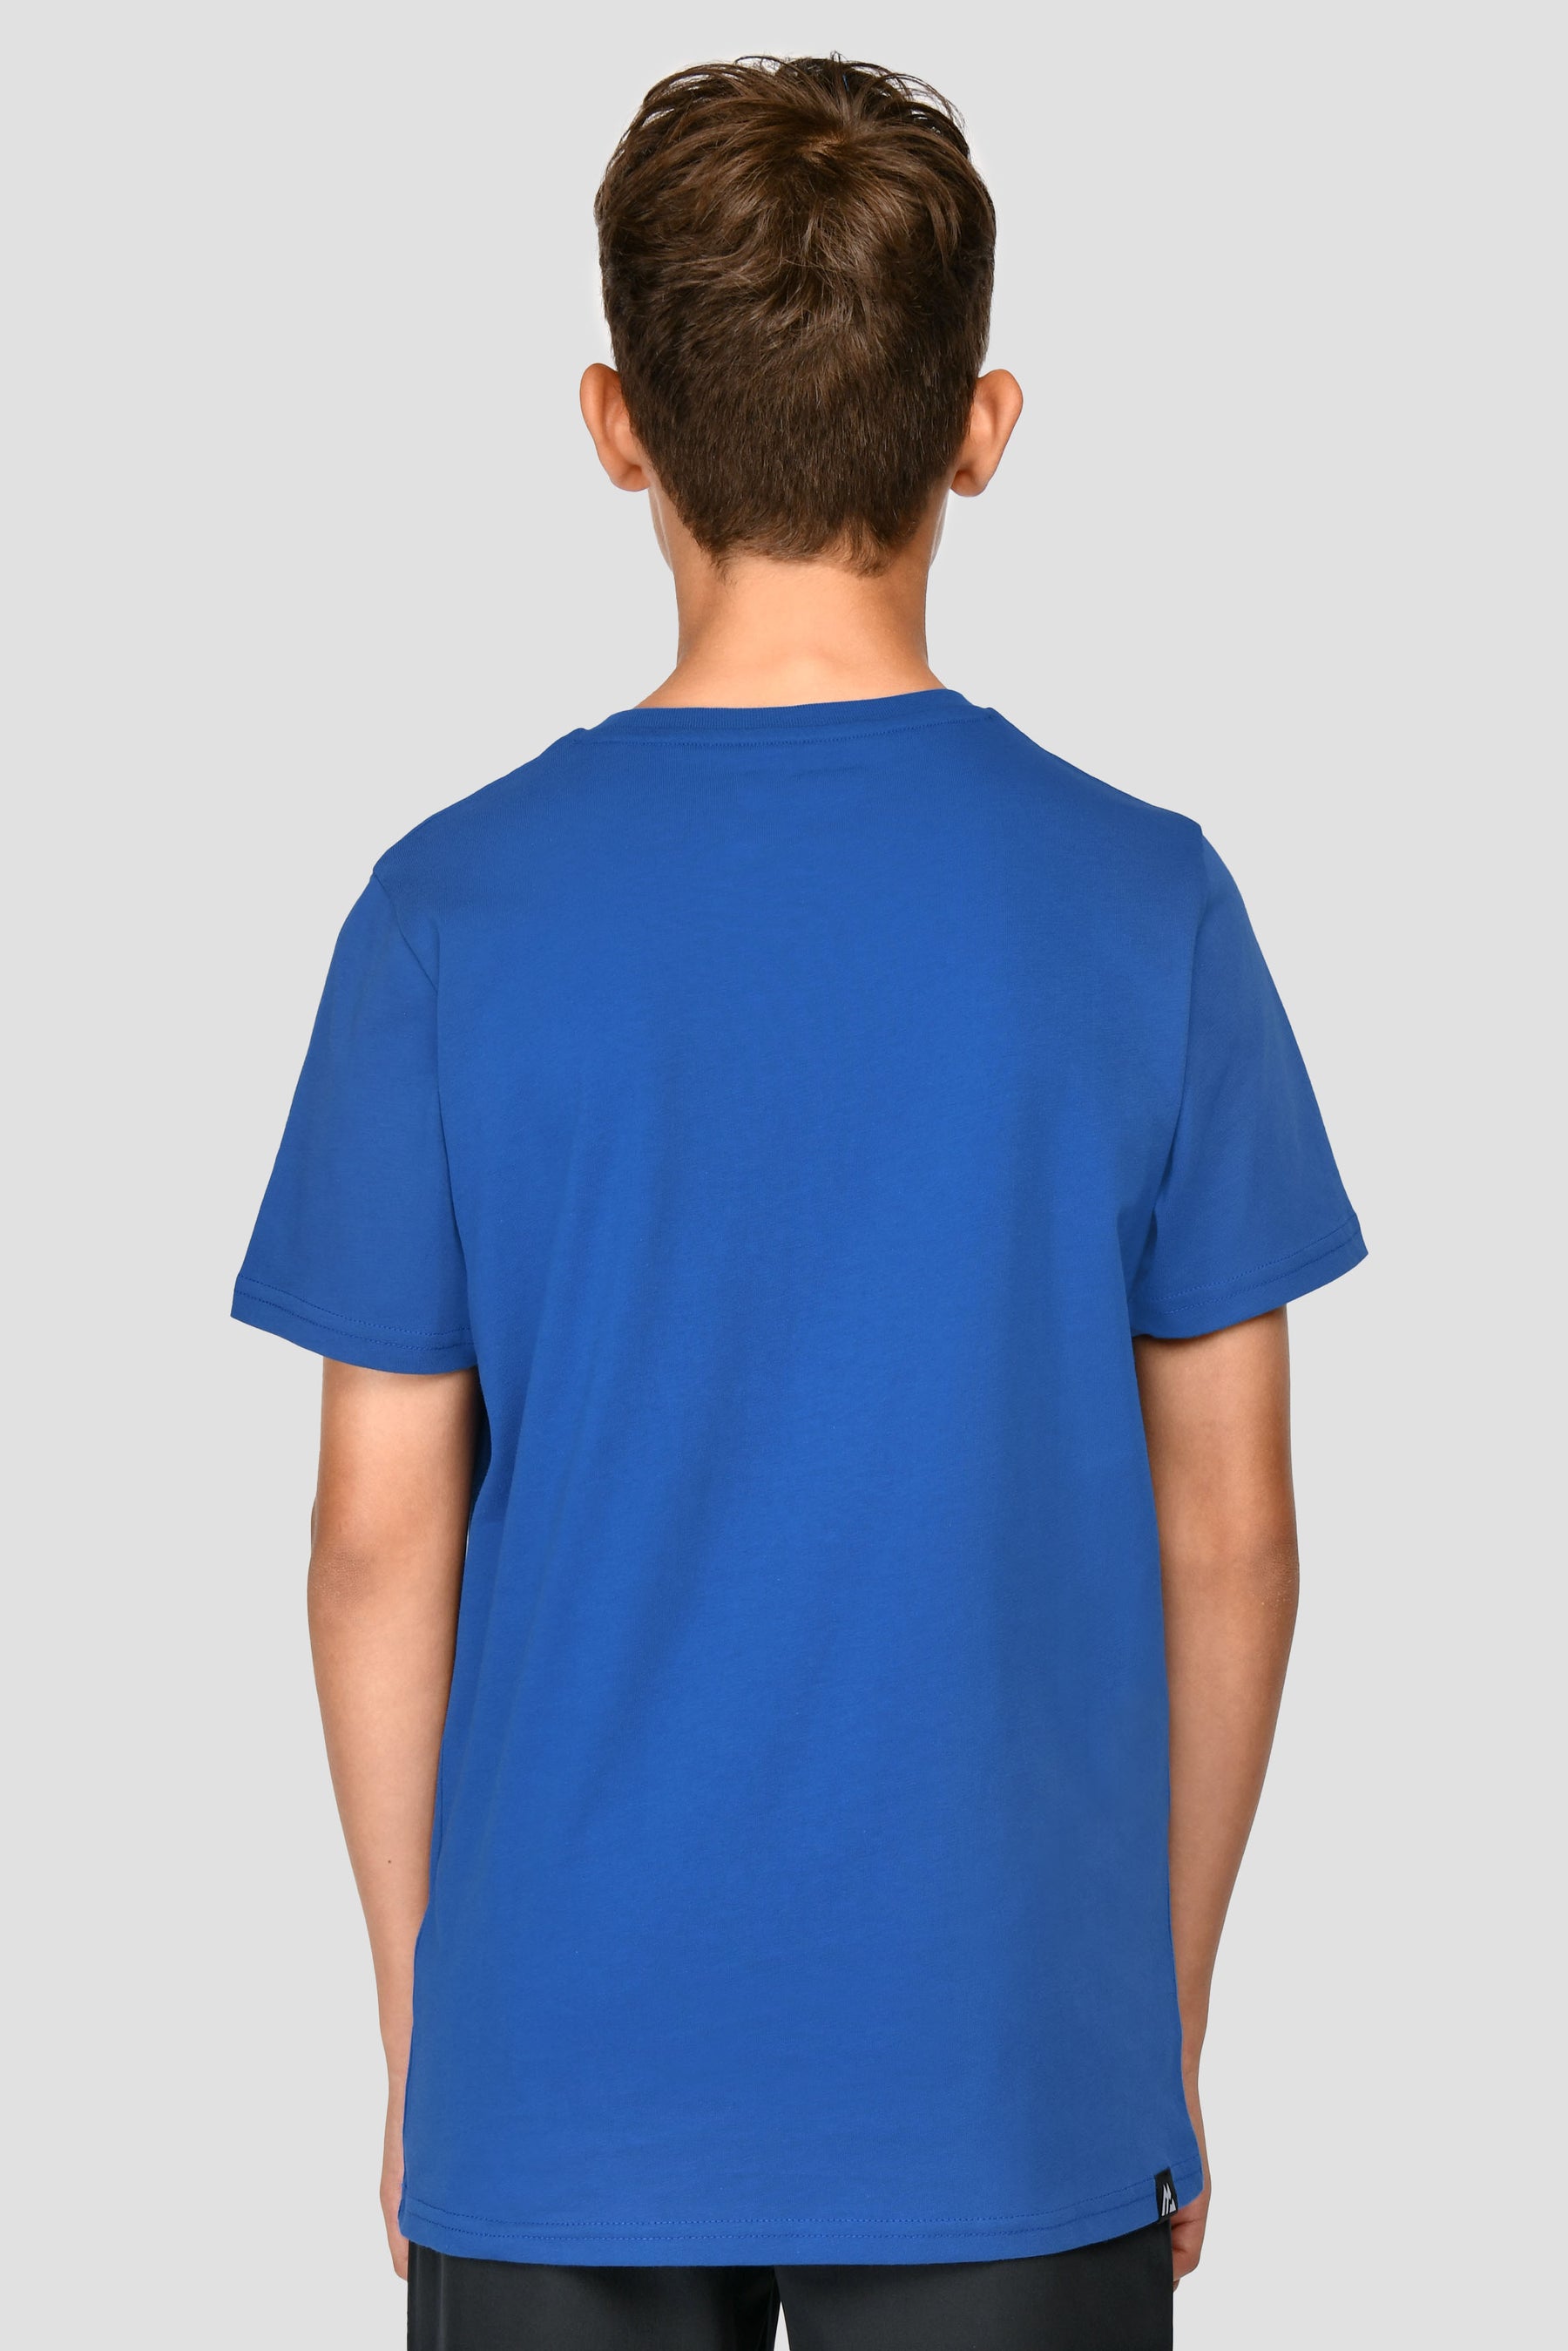 Junior Linear Trail T-Shirt - Duke Blue